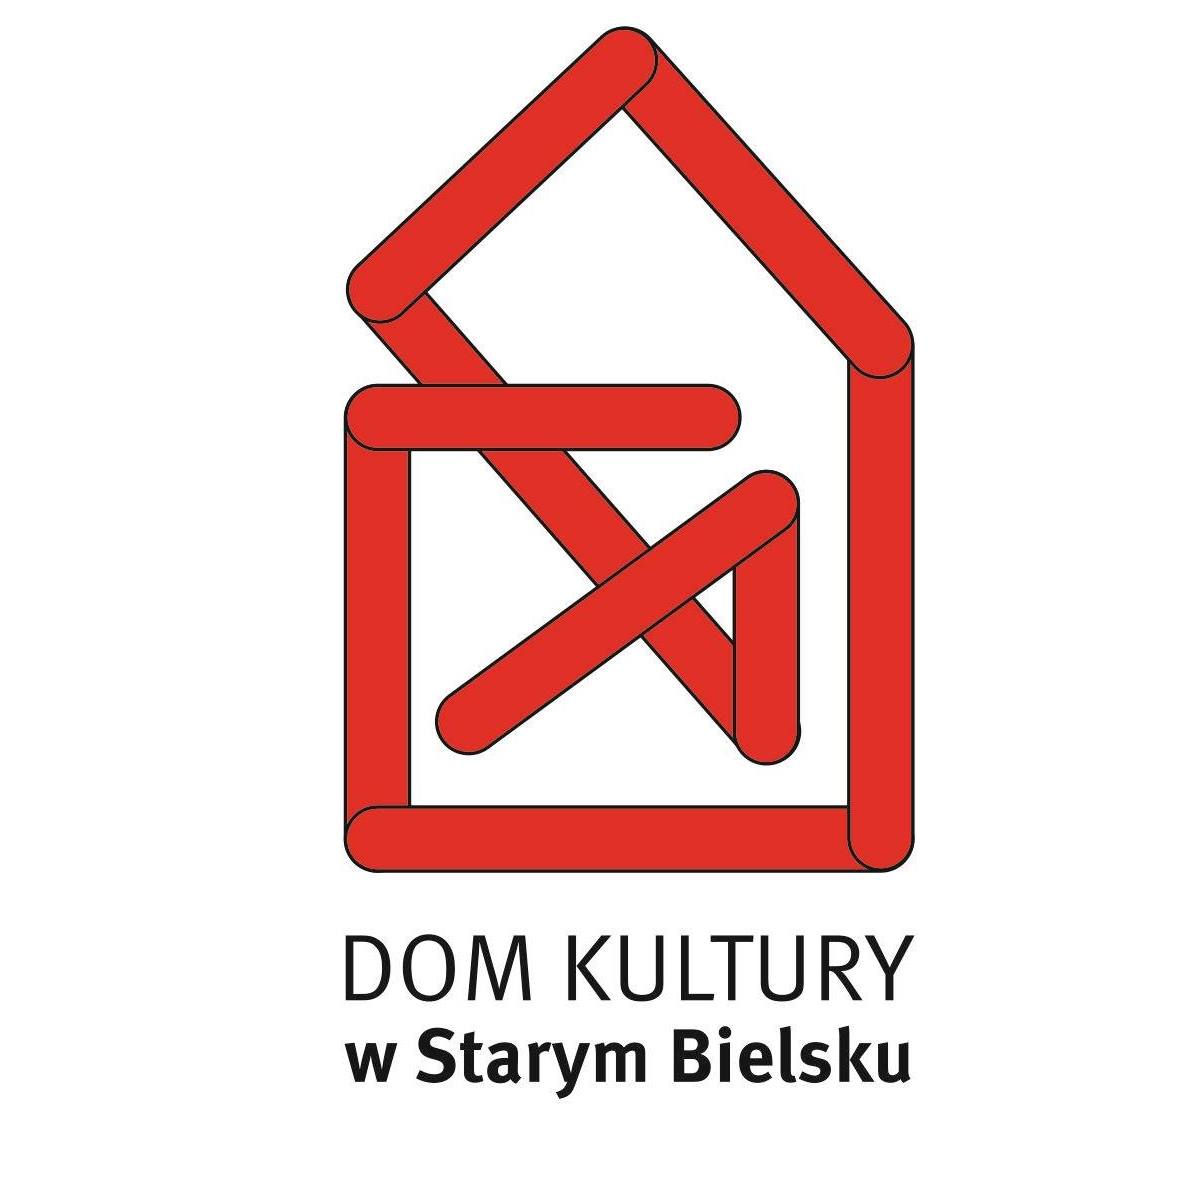  Tramway Kulturalny: Co łączy Witkacego z Bielskiem-Białą? - odwołany
 Na zdjęciu logo dk 